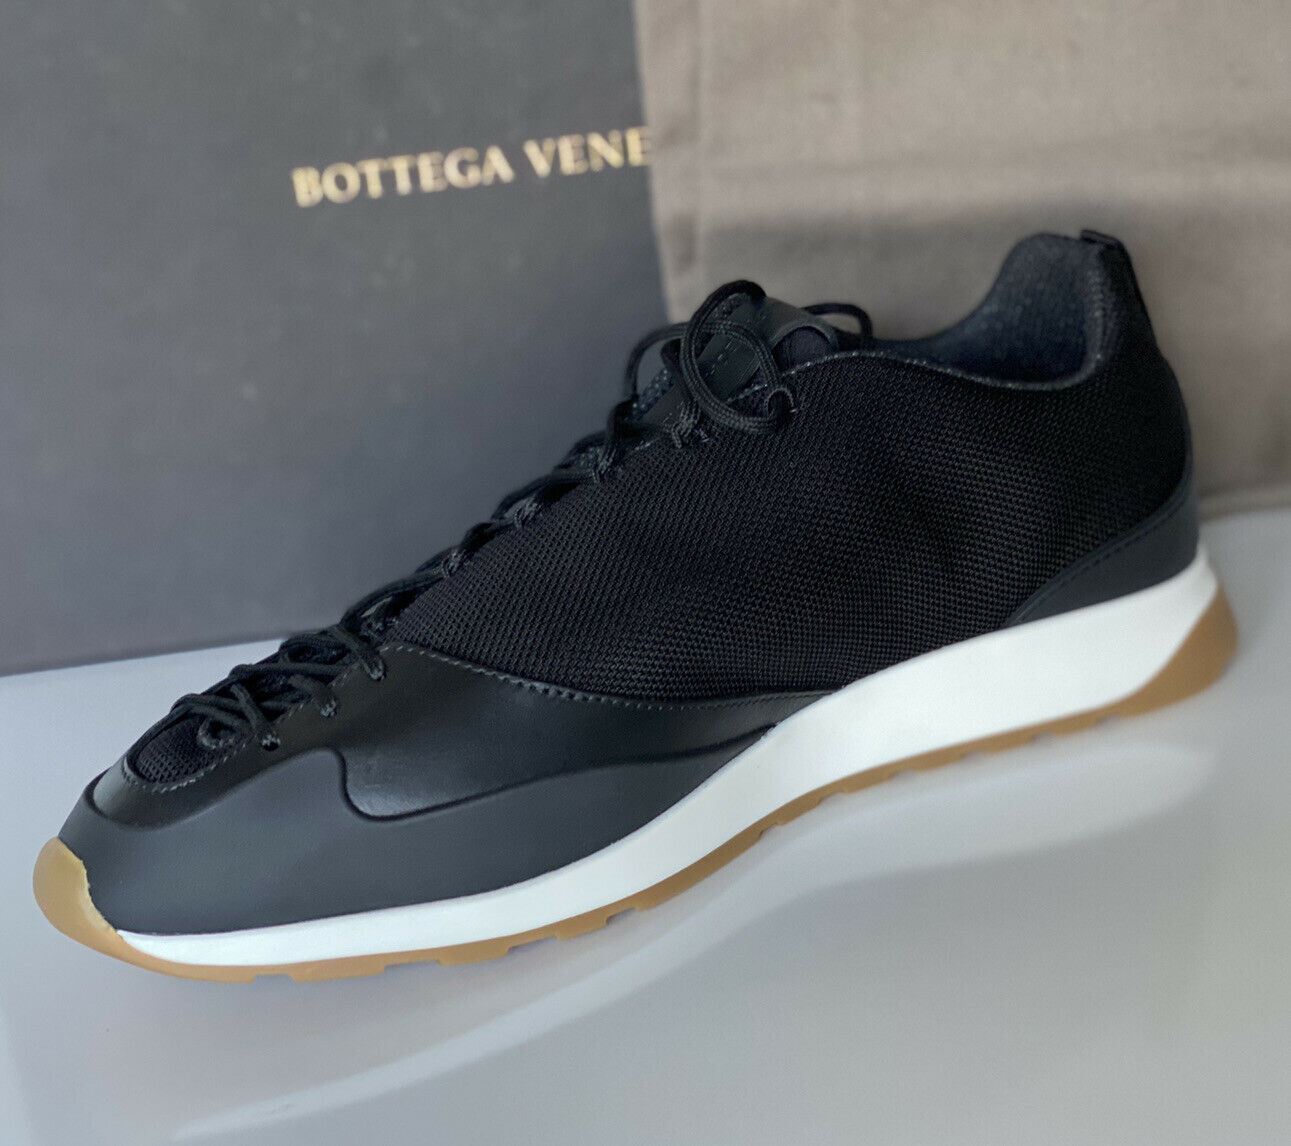 Мужские черные кроссовки Scar Tex Bottega Veneta 790 долларов США 9,5 США (42,5 евро) 609891 